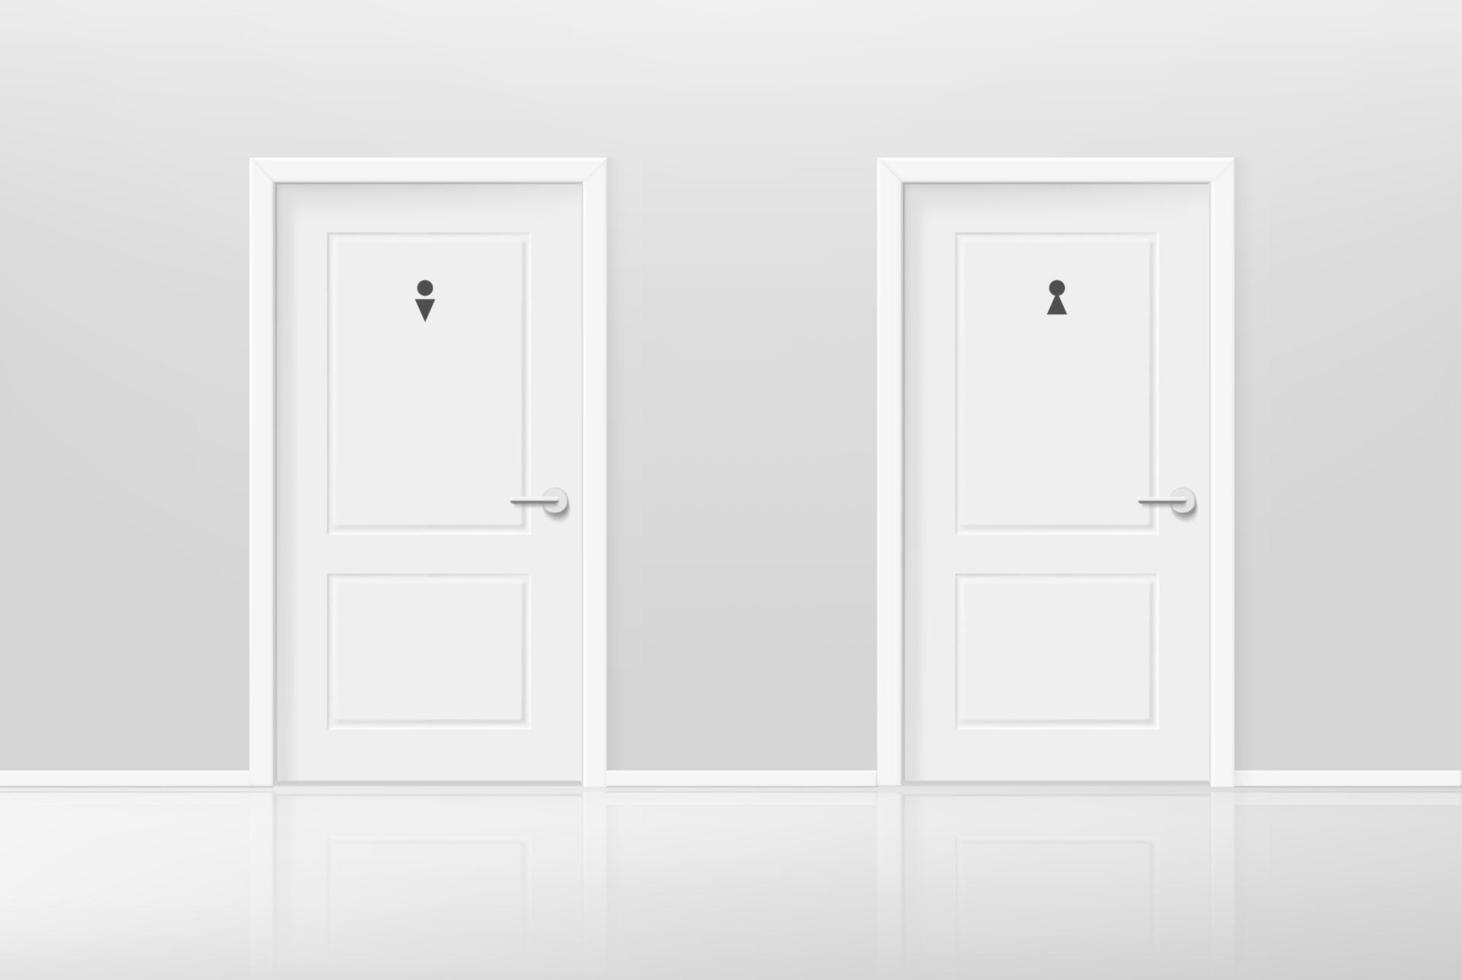 porte dei servizi igienici maschili e femminili in interni luminosi. illustrazione vettoriale di stile 3d realistico